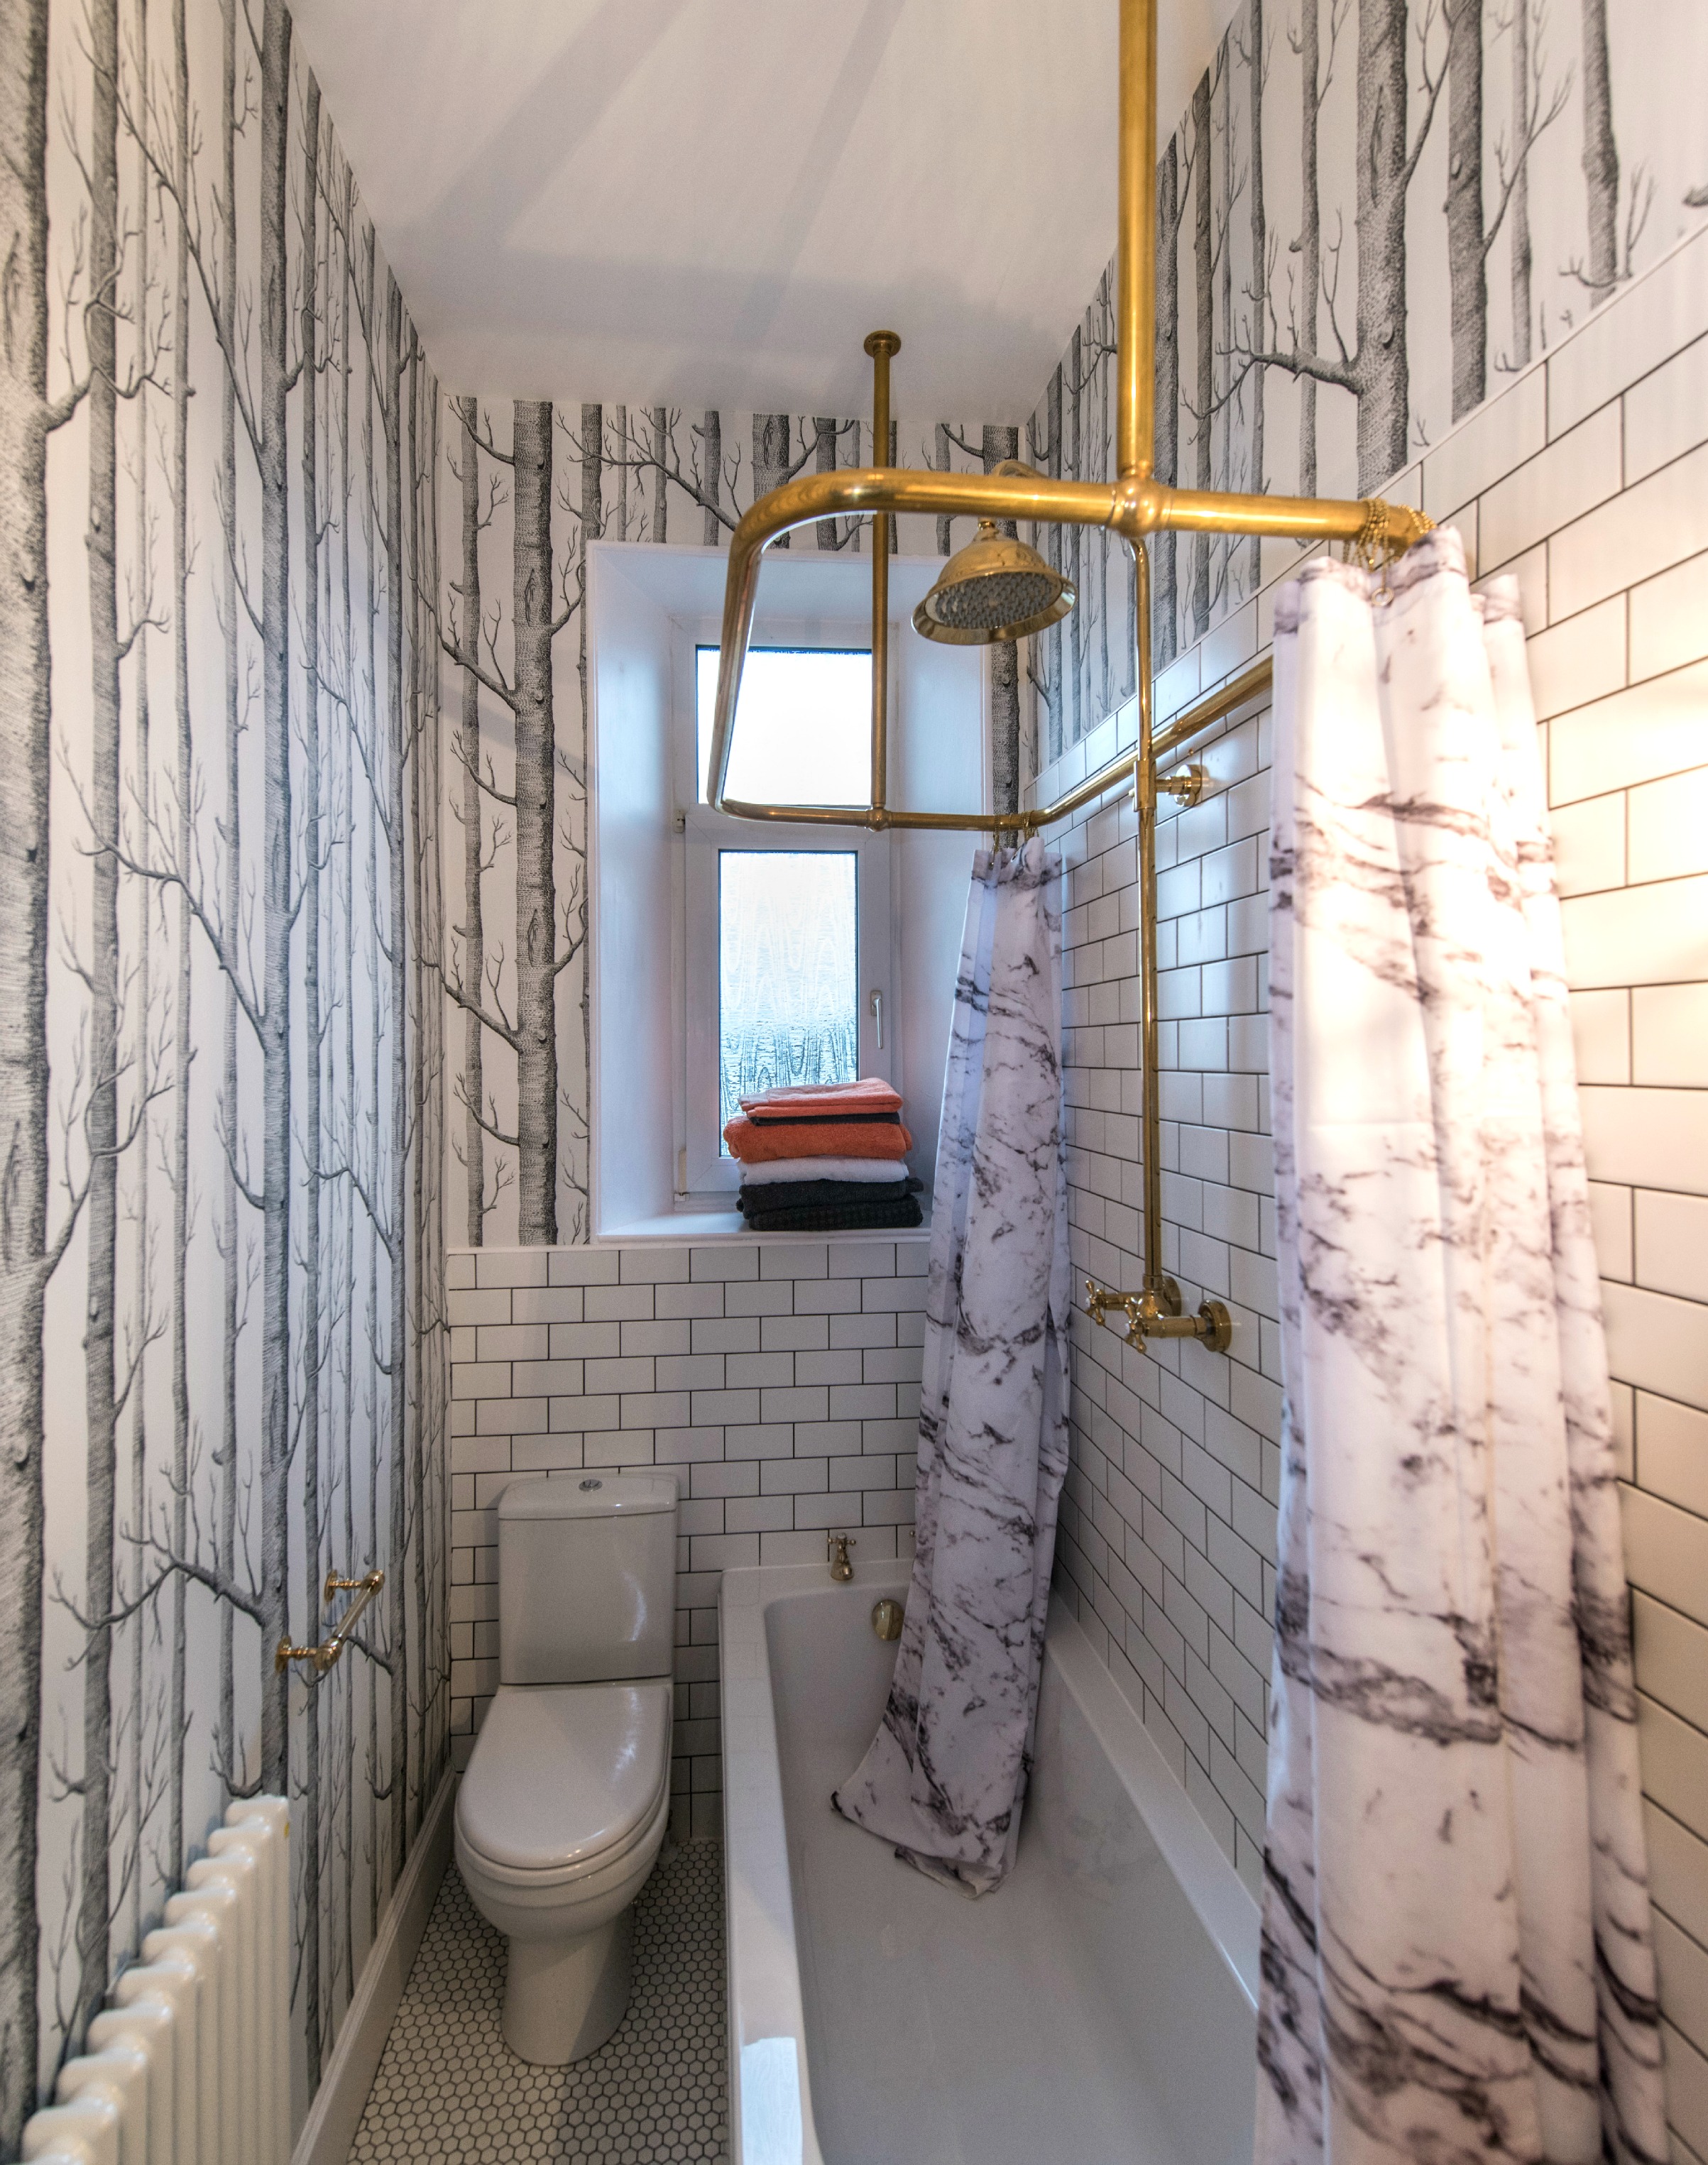 bathroom remodel; mirror; toilet; tile floor; shower; lighting; sink; wall art | Apartment remodeled by: Deborah Peterson Milne